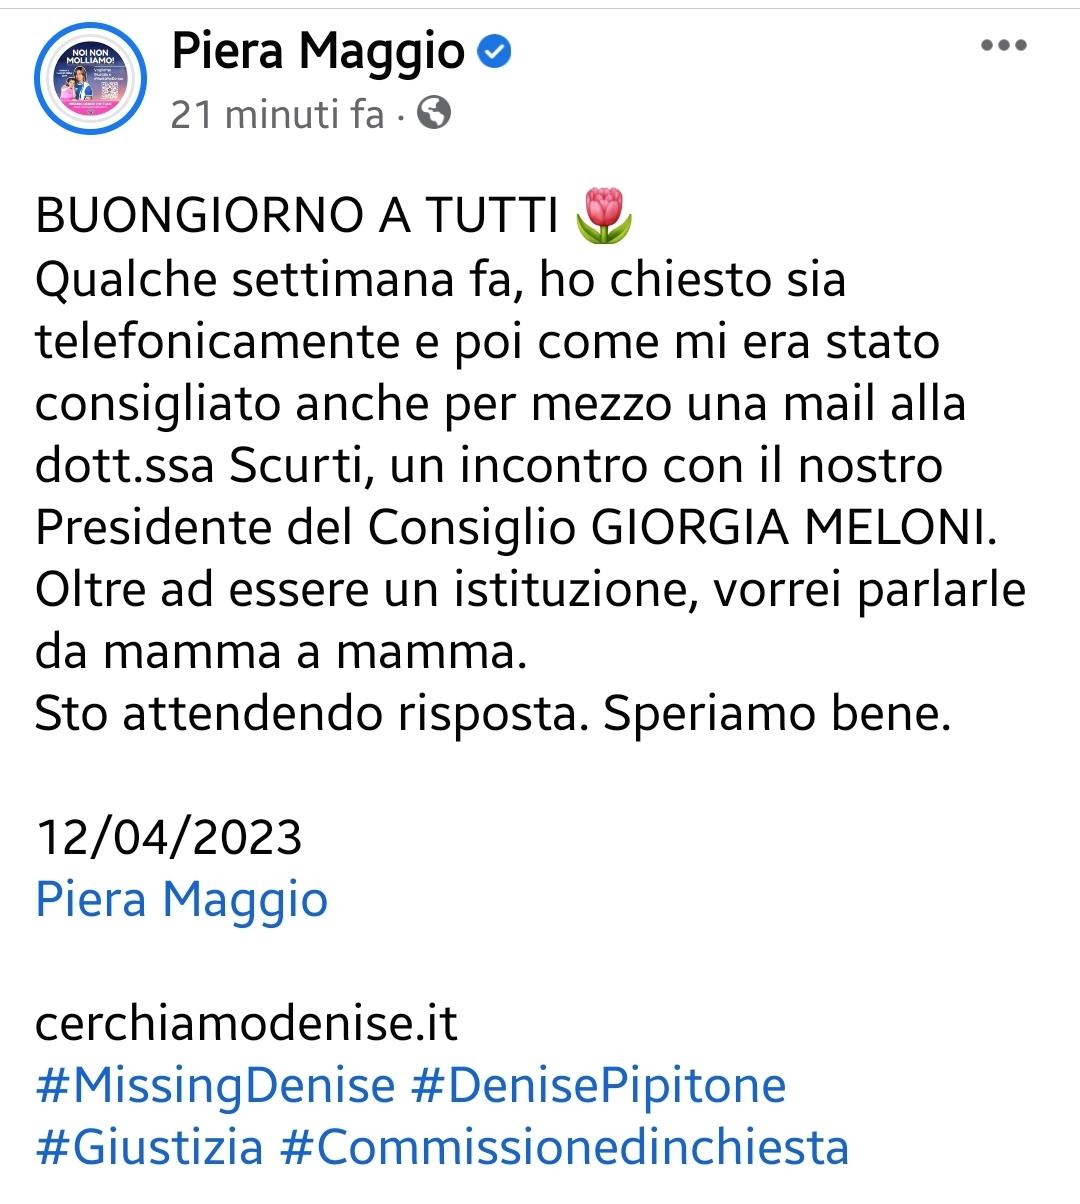 Piera Maggio dal suo profilo Facebook ha fatto sapere che ha chiesto un incontro con il premier Giorgia Meloni.